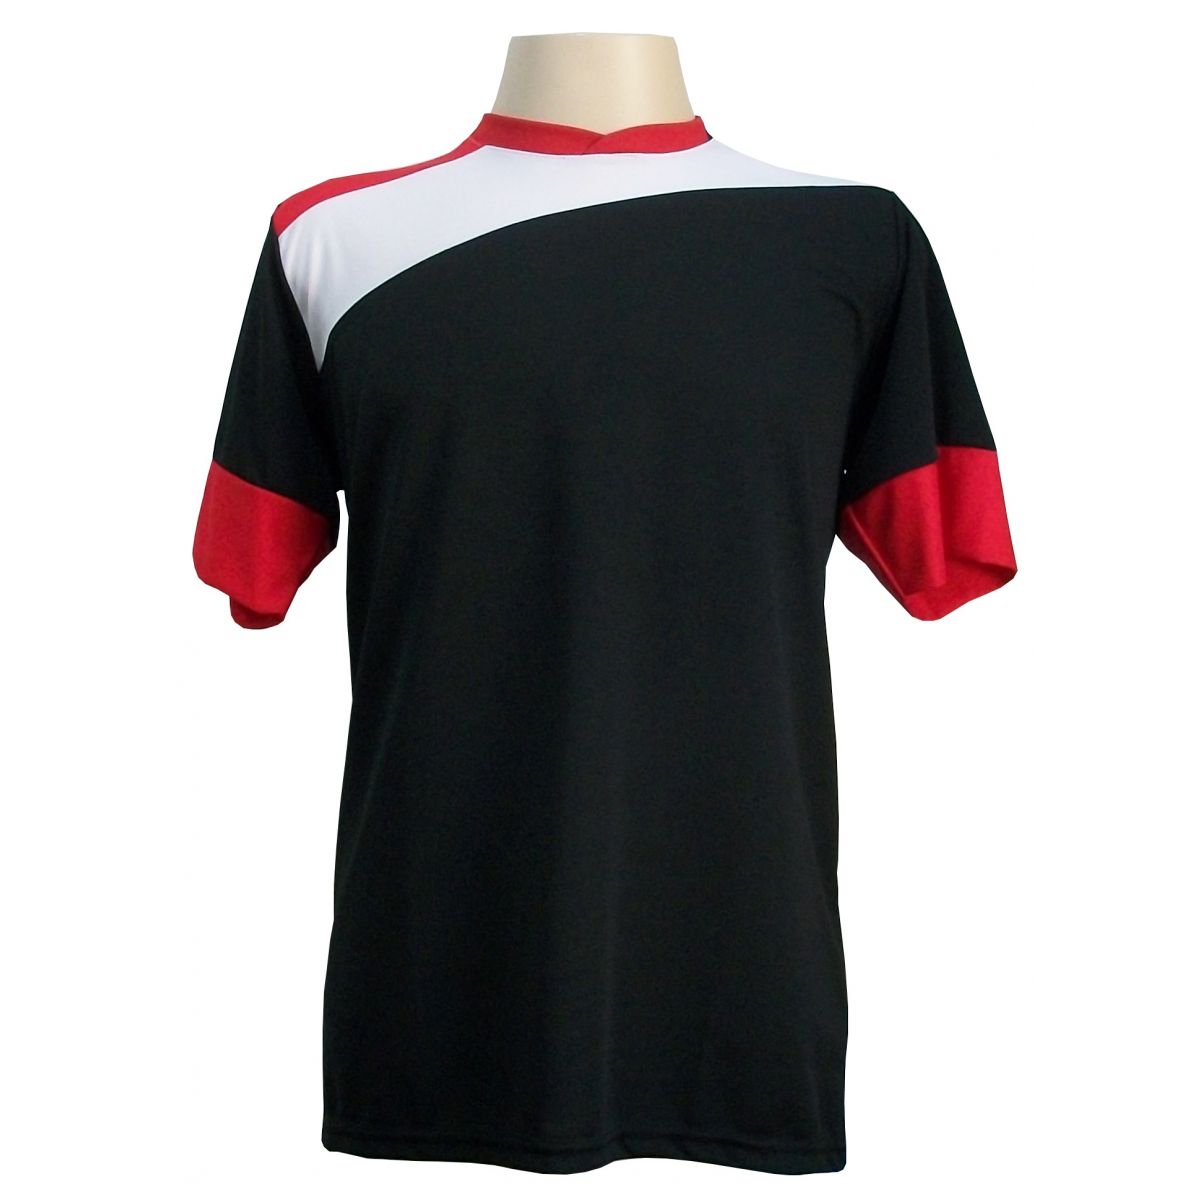 Uniforme Esportivo com 14 camisas modelo Sporting Preto/Branco/Vermelho + 14 calções modelo Copa + 1 Goleiro + Brindes